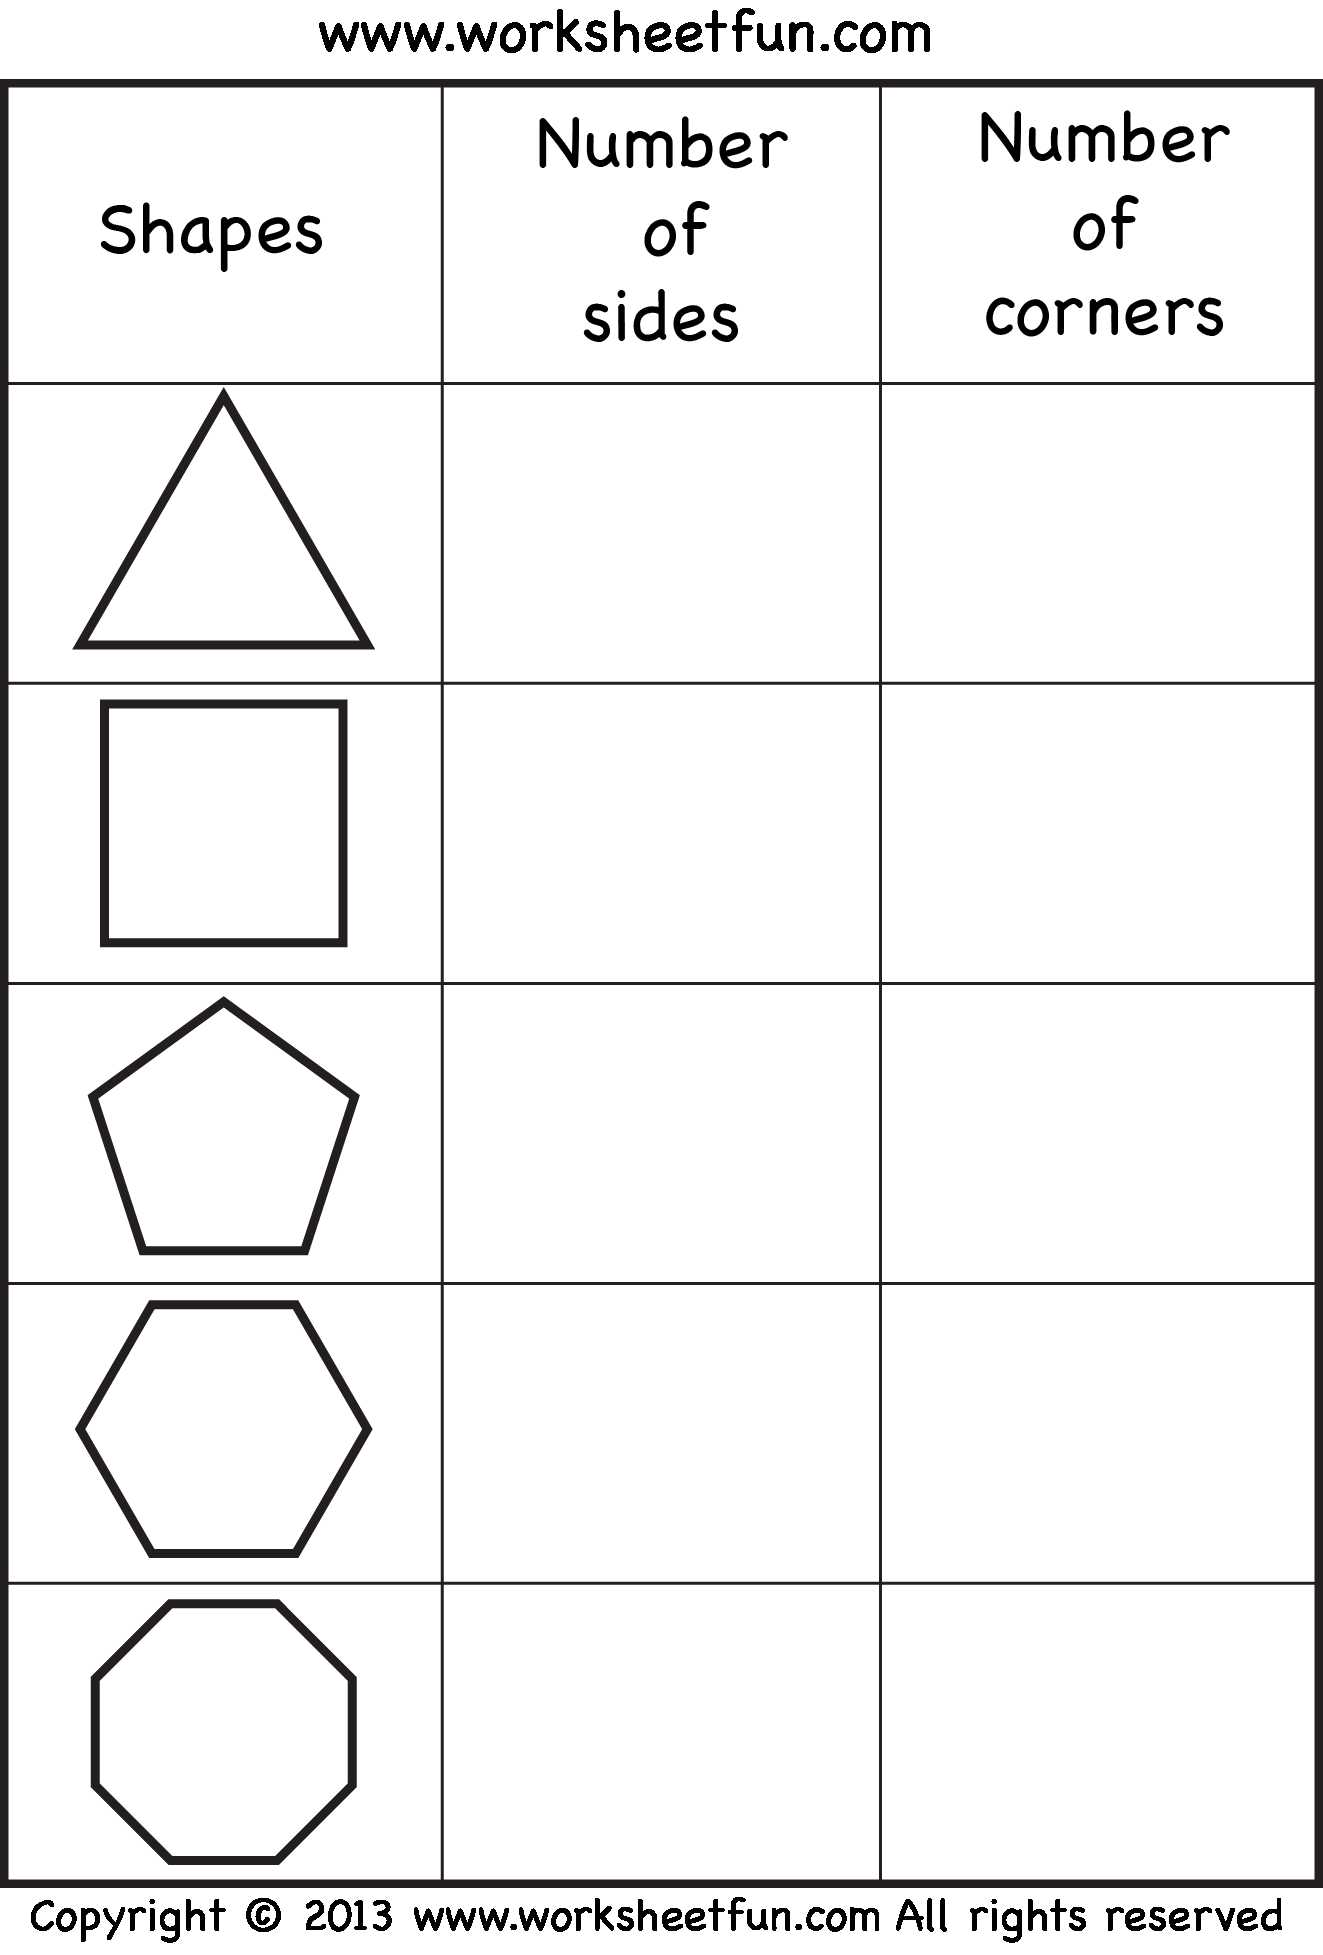 Alphabet Worksheets for Grade 1 or Shapes Worksheets for Grade the Best Worksheets Image Collection